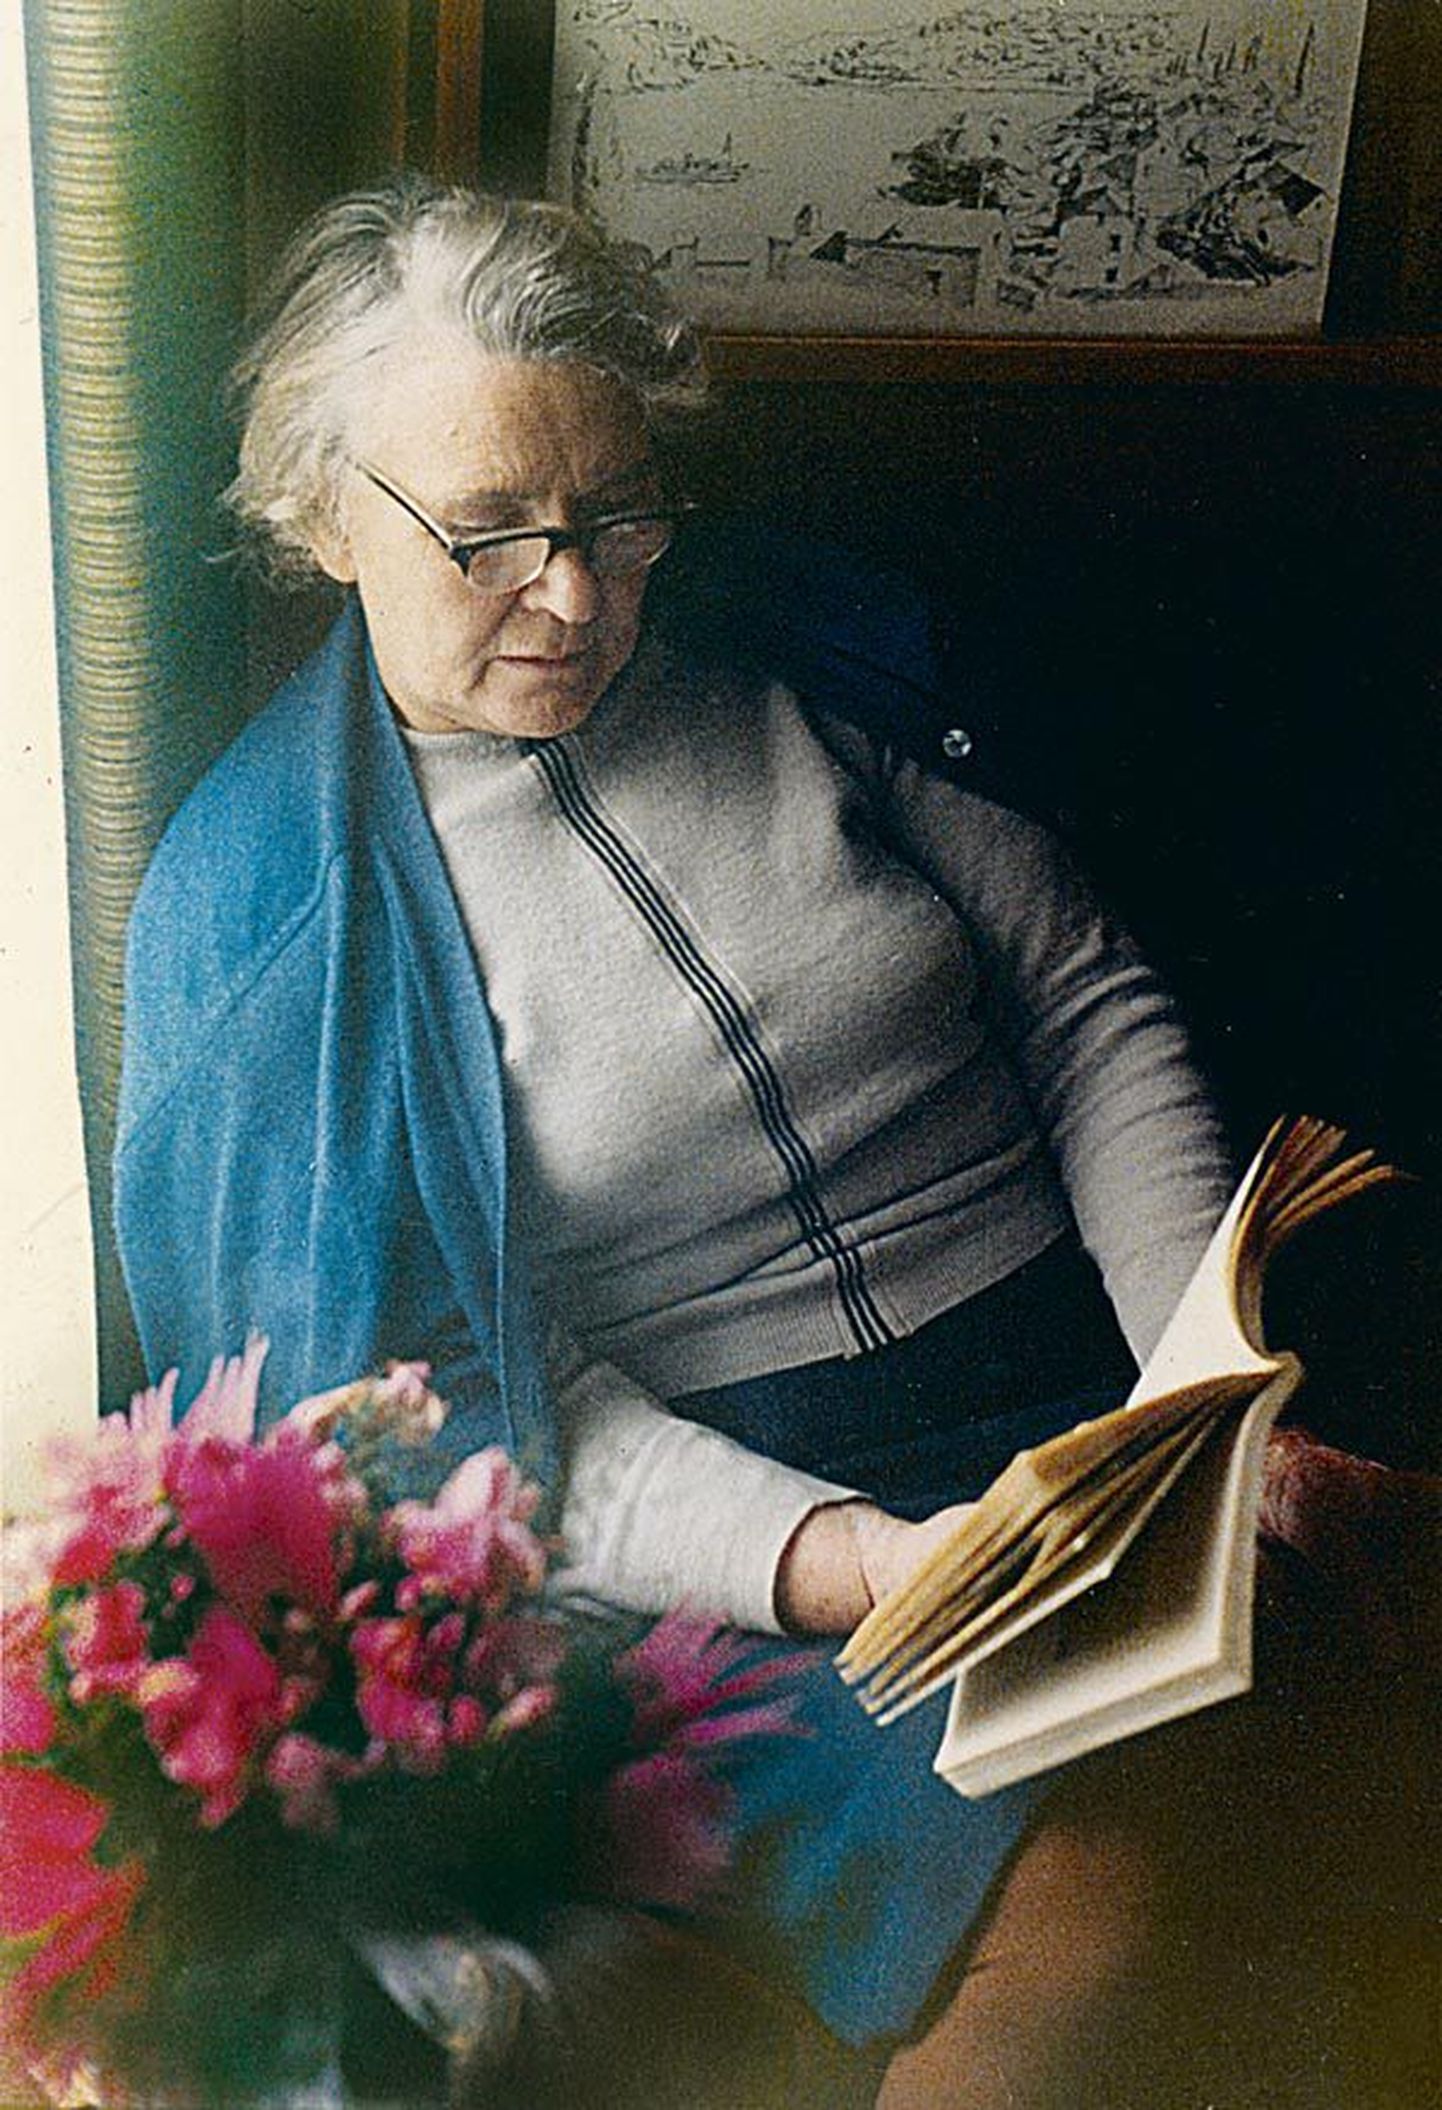 Ilse Ermi pere tähistab täna tema 100. sünniaastapäeva A. Särevi kortermuuseumis. 

Erakogu